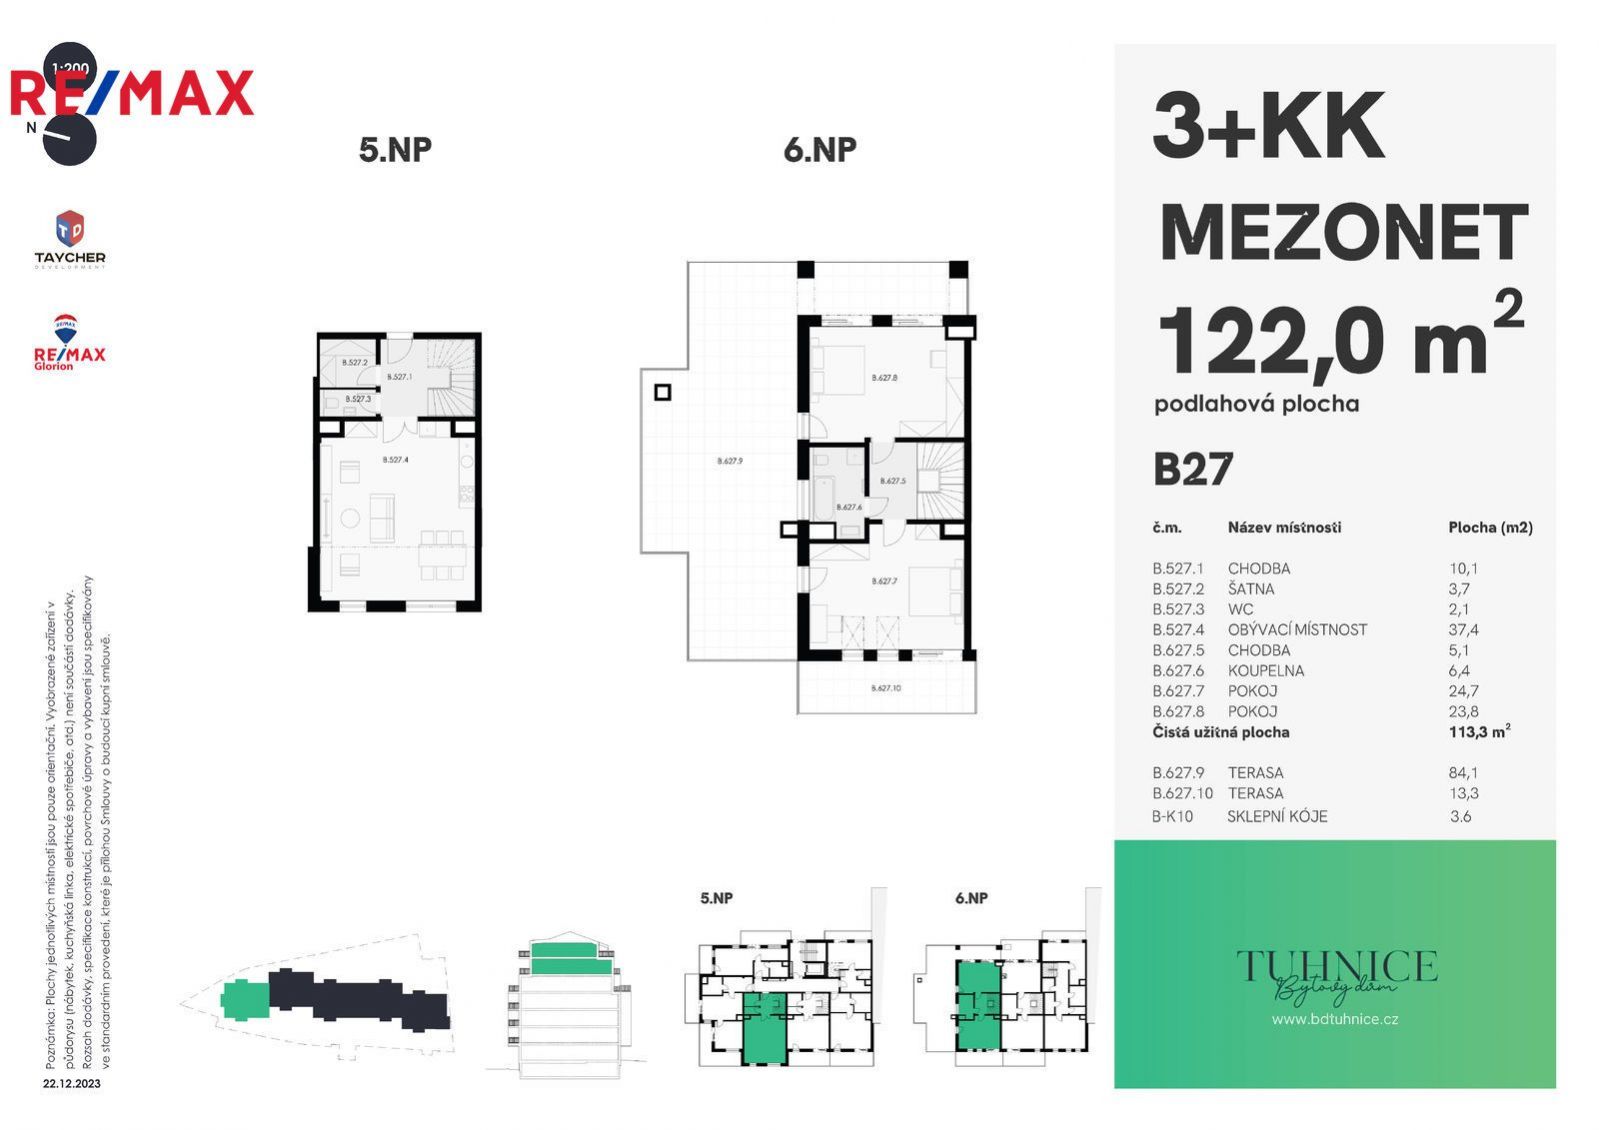 Prodej bytu č.27, 3+KK (mezonet), 5NP+6NP, 122m2 + 113,3m2 terasa / balkon, Šumavská, Karlovy Vary, obrázek č. 3